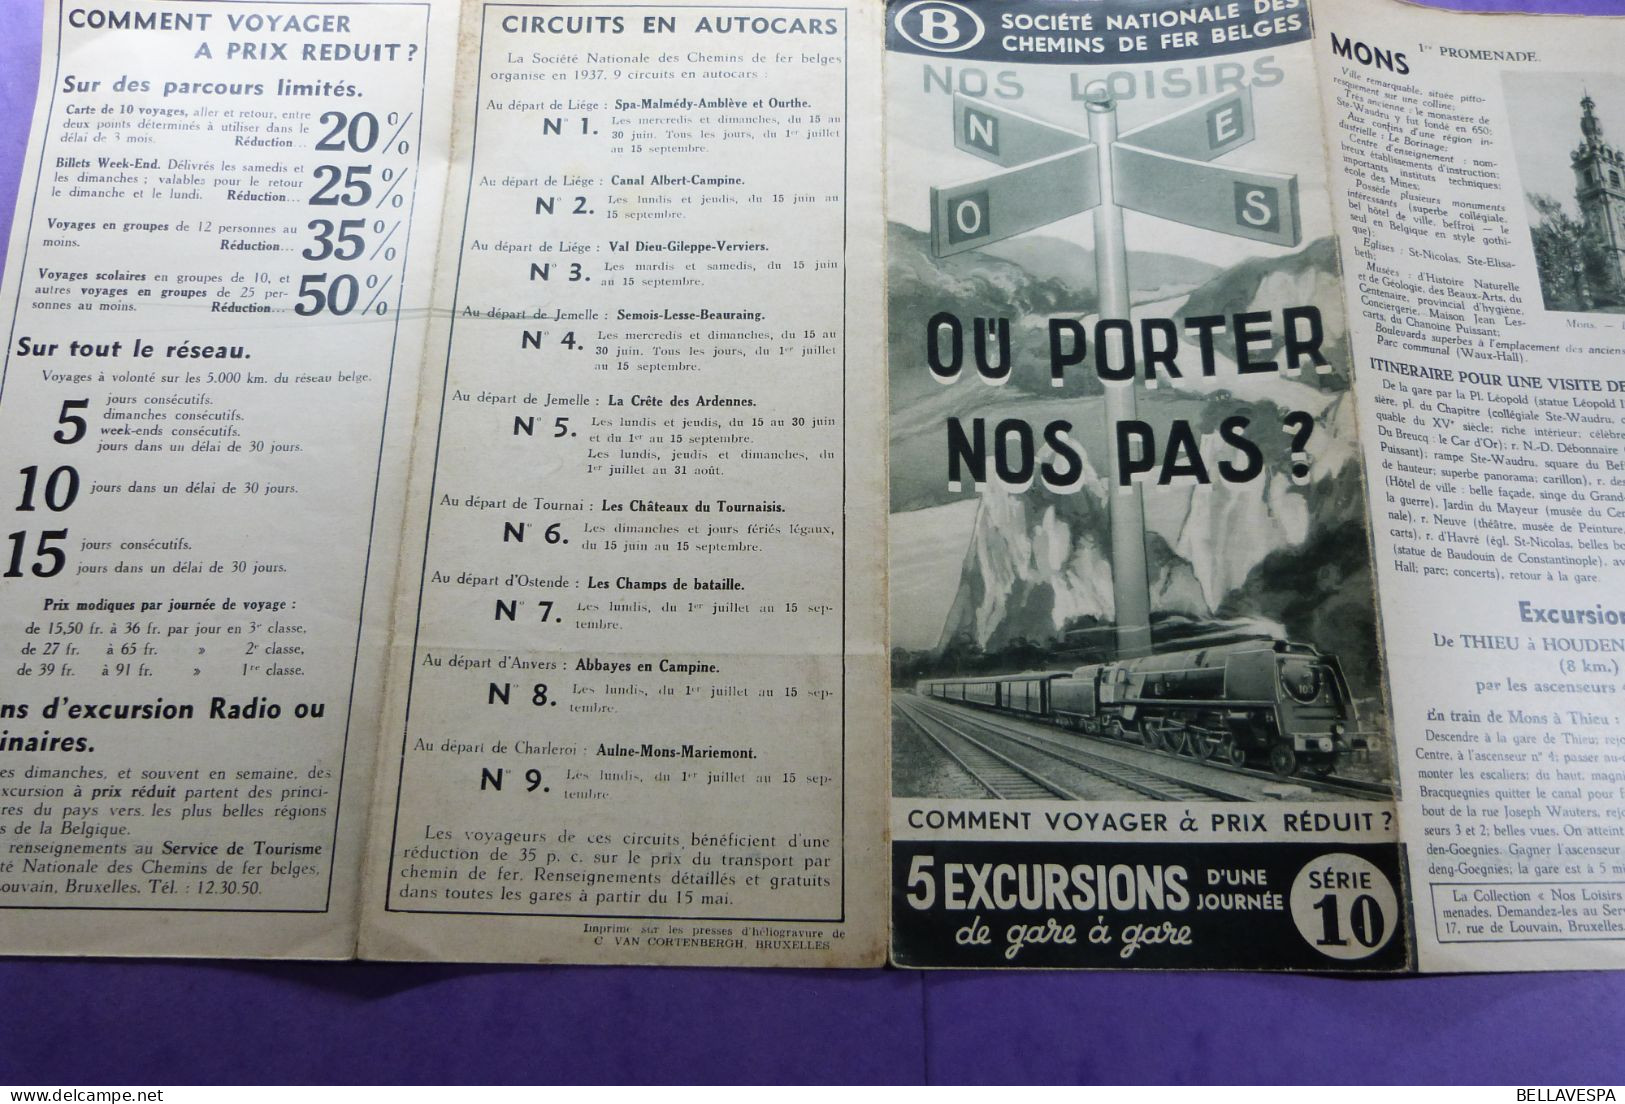 Soc. Nat.des Chemins de fer Belges EXCURSIONS Flyer Reisroutes belgische Spoorwegen ancien brochures Lot x 19 stuks